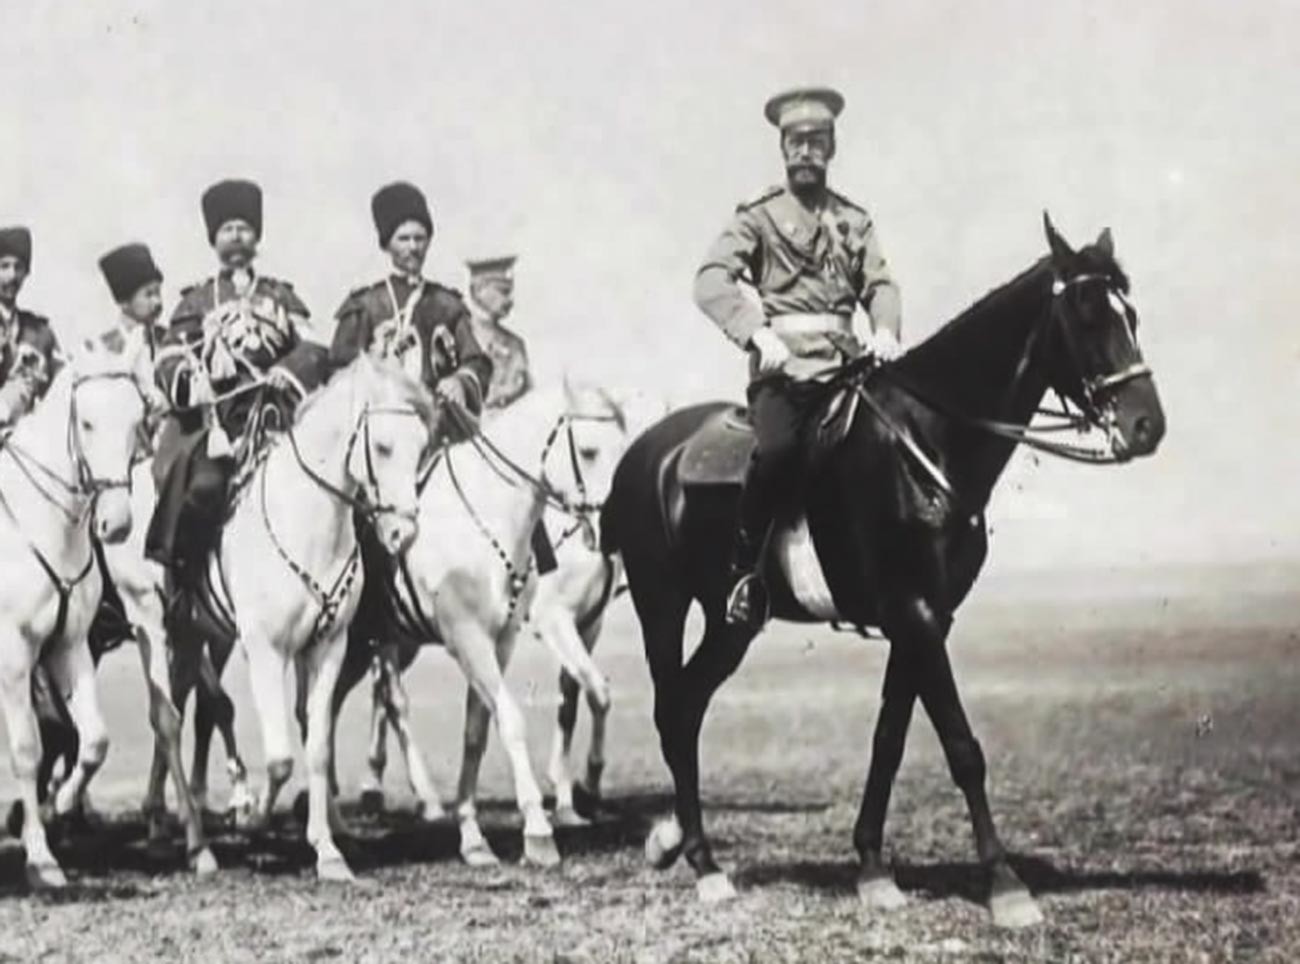 Цар Николај II са козацима из Конвоја Његовог Императорског Величанства.